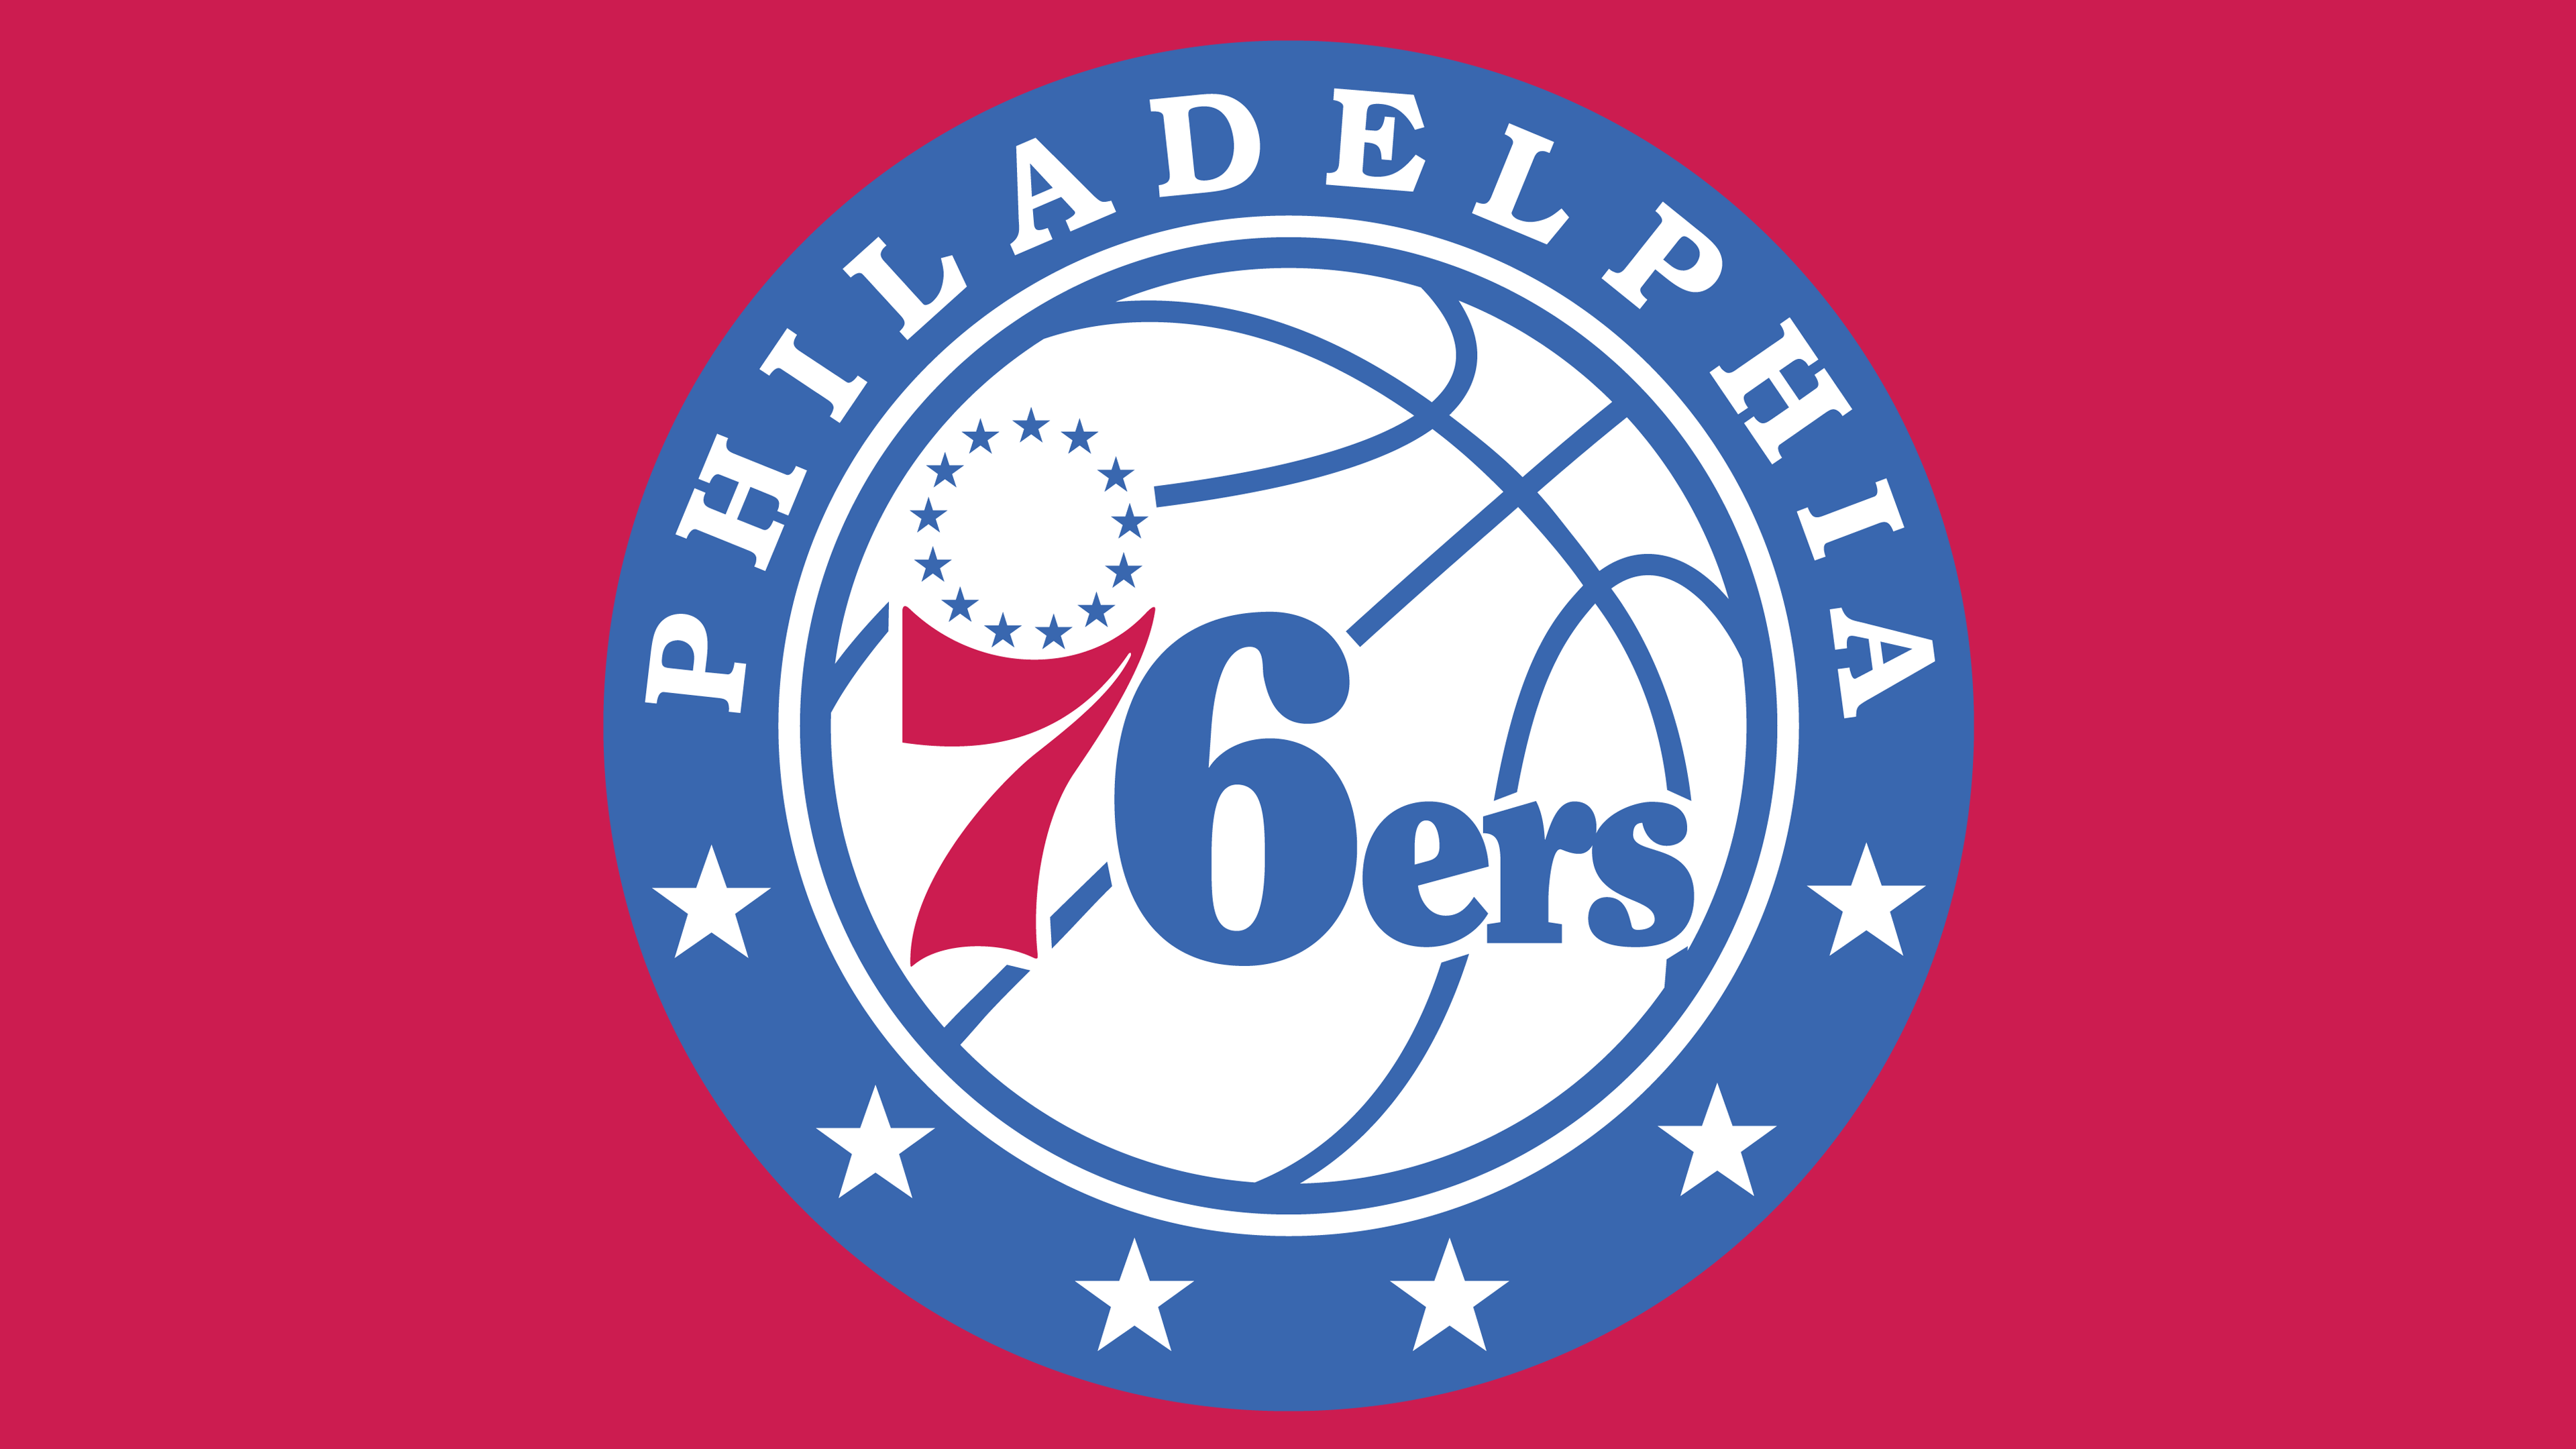 76Ers Logo - Philadelphia 76ers Logo History Team Name and emblem